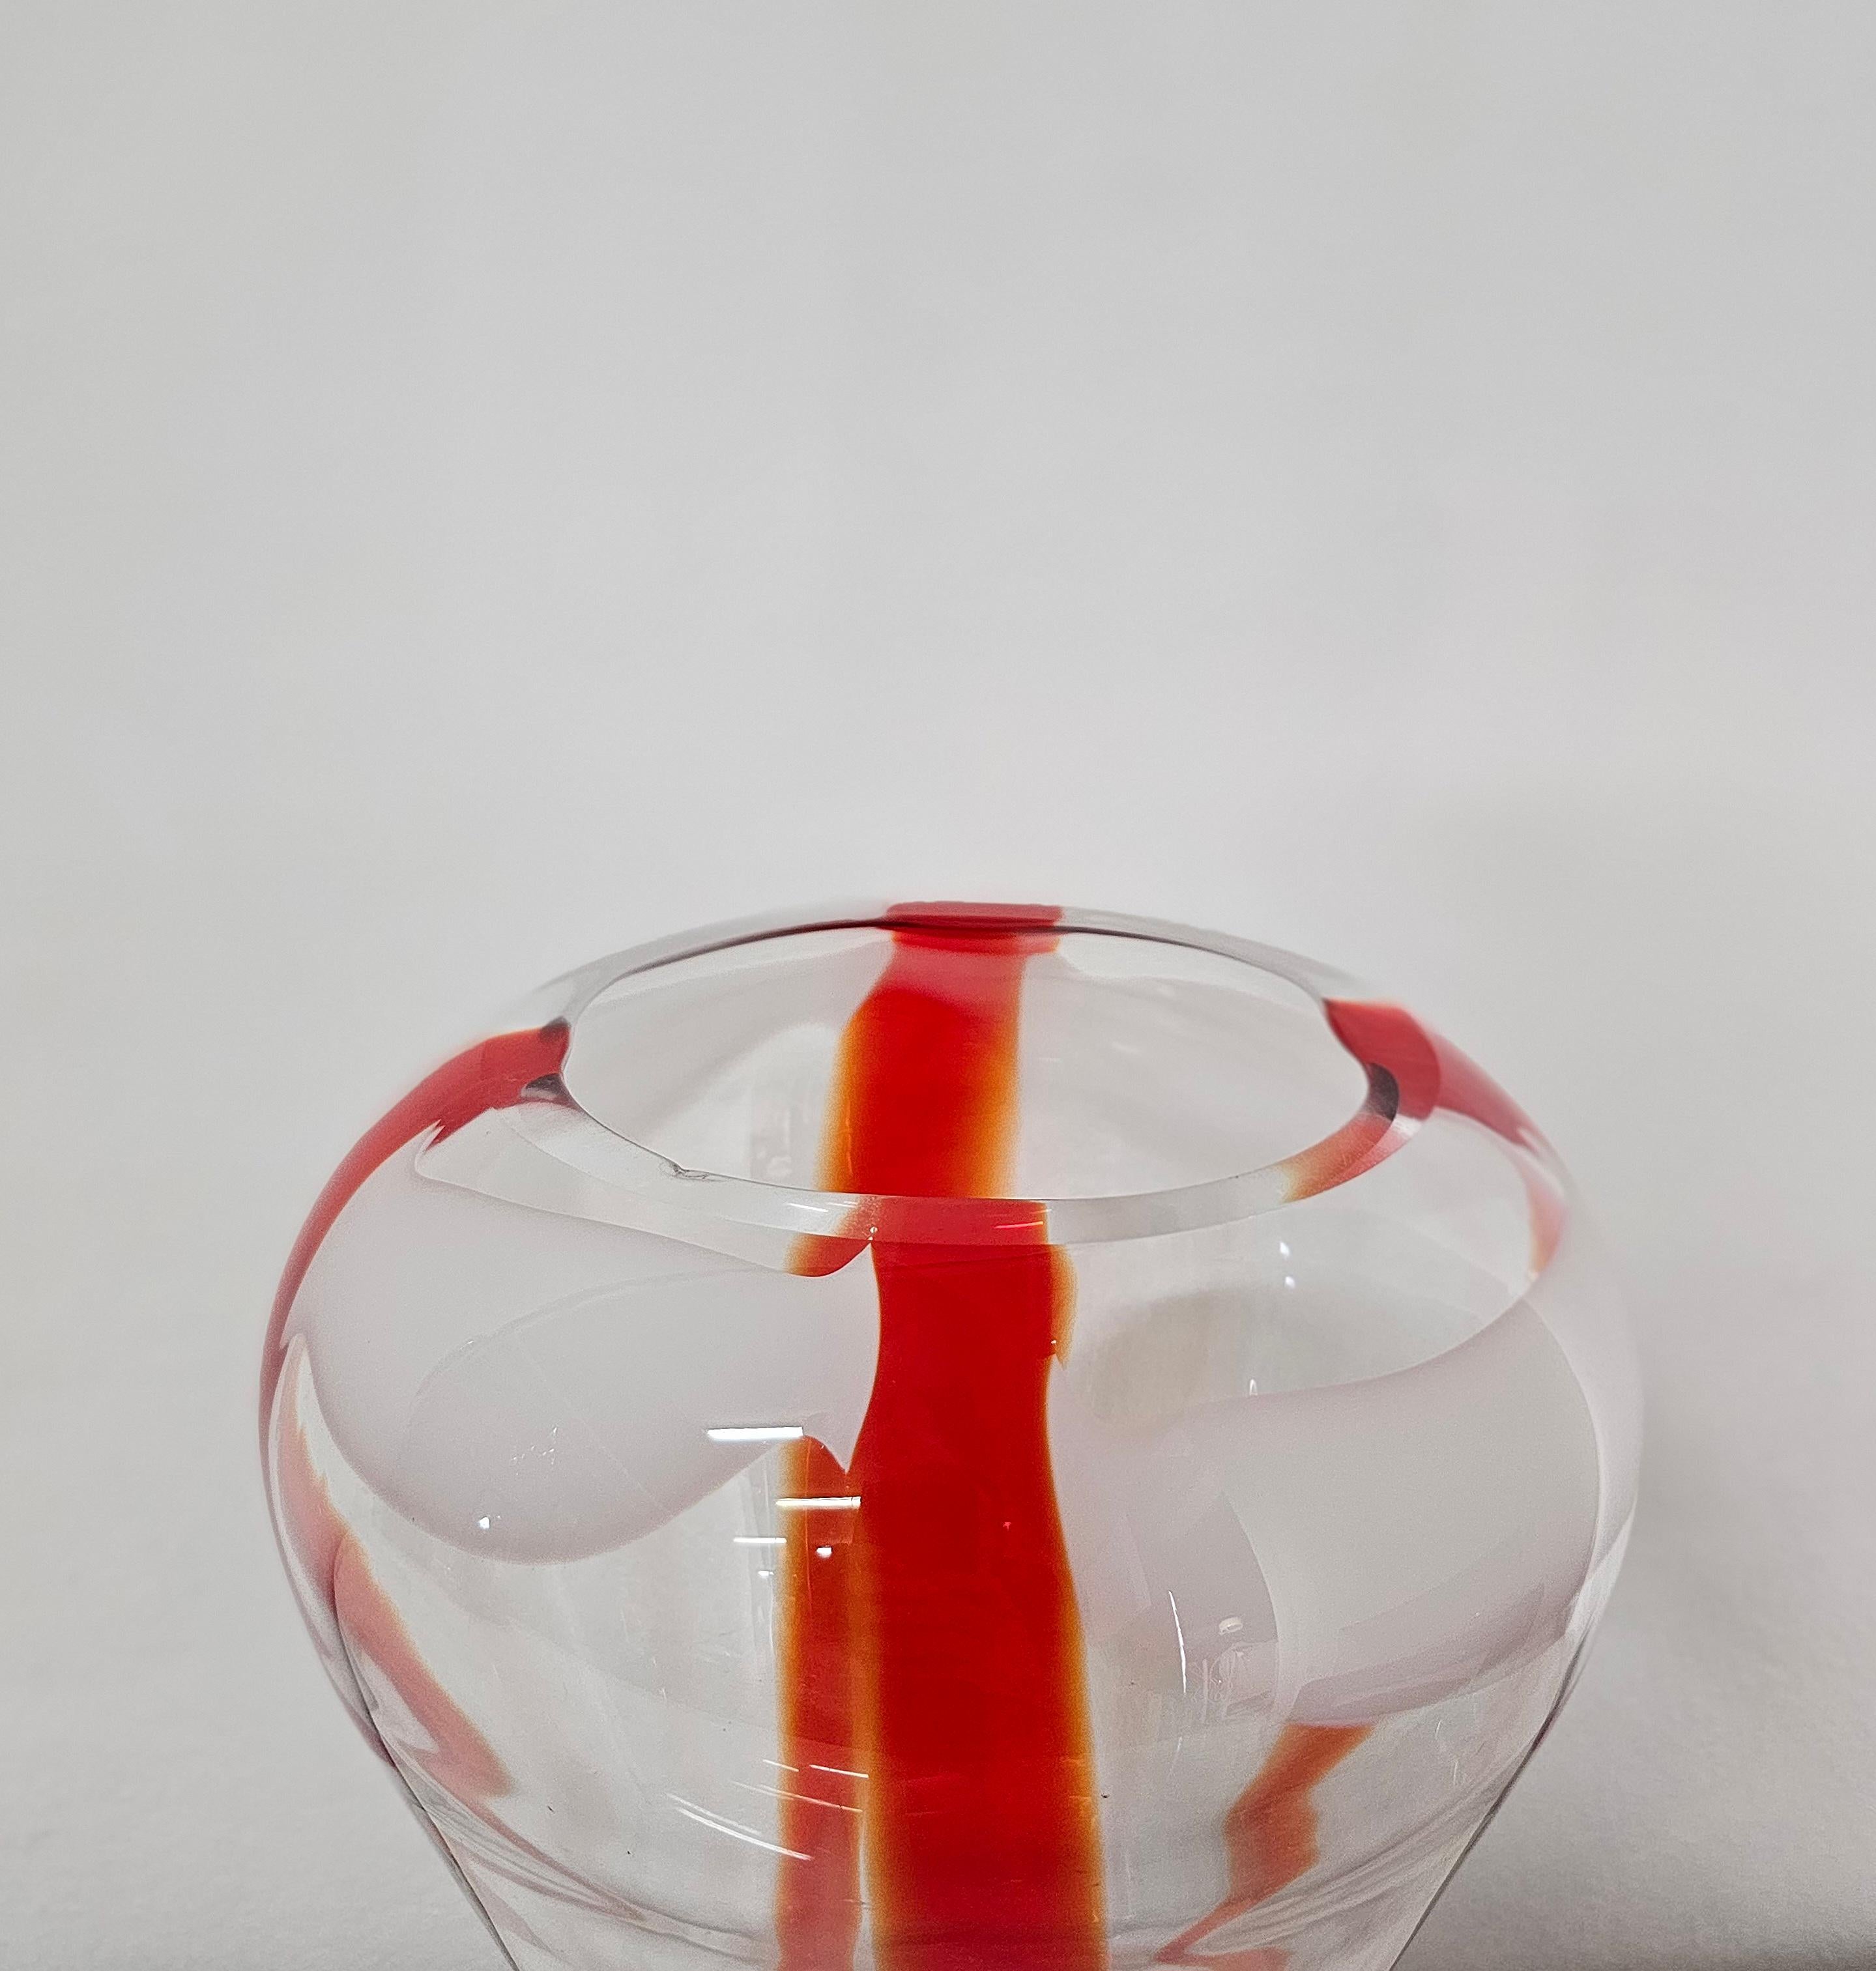 Decorative Object Vase Guzzini Murano Glass Midcentury Italian Design 1970s For Sale 6